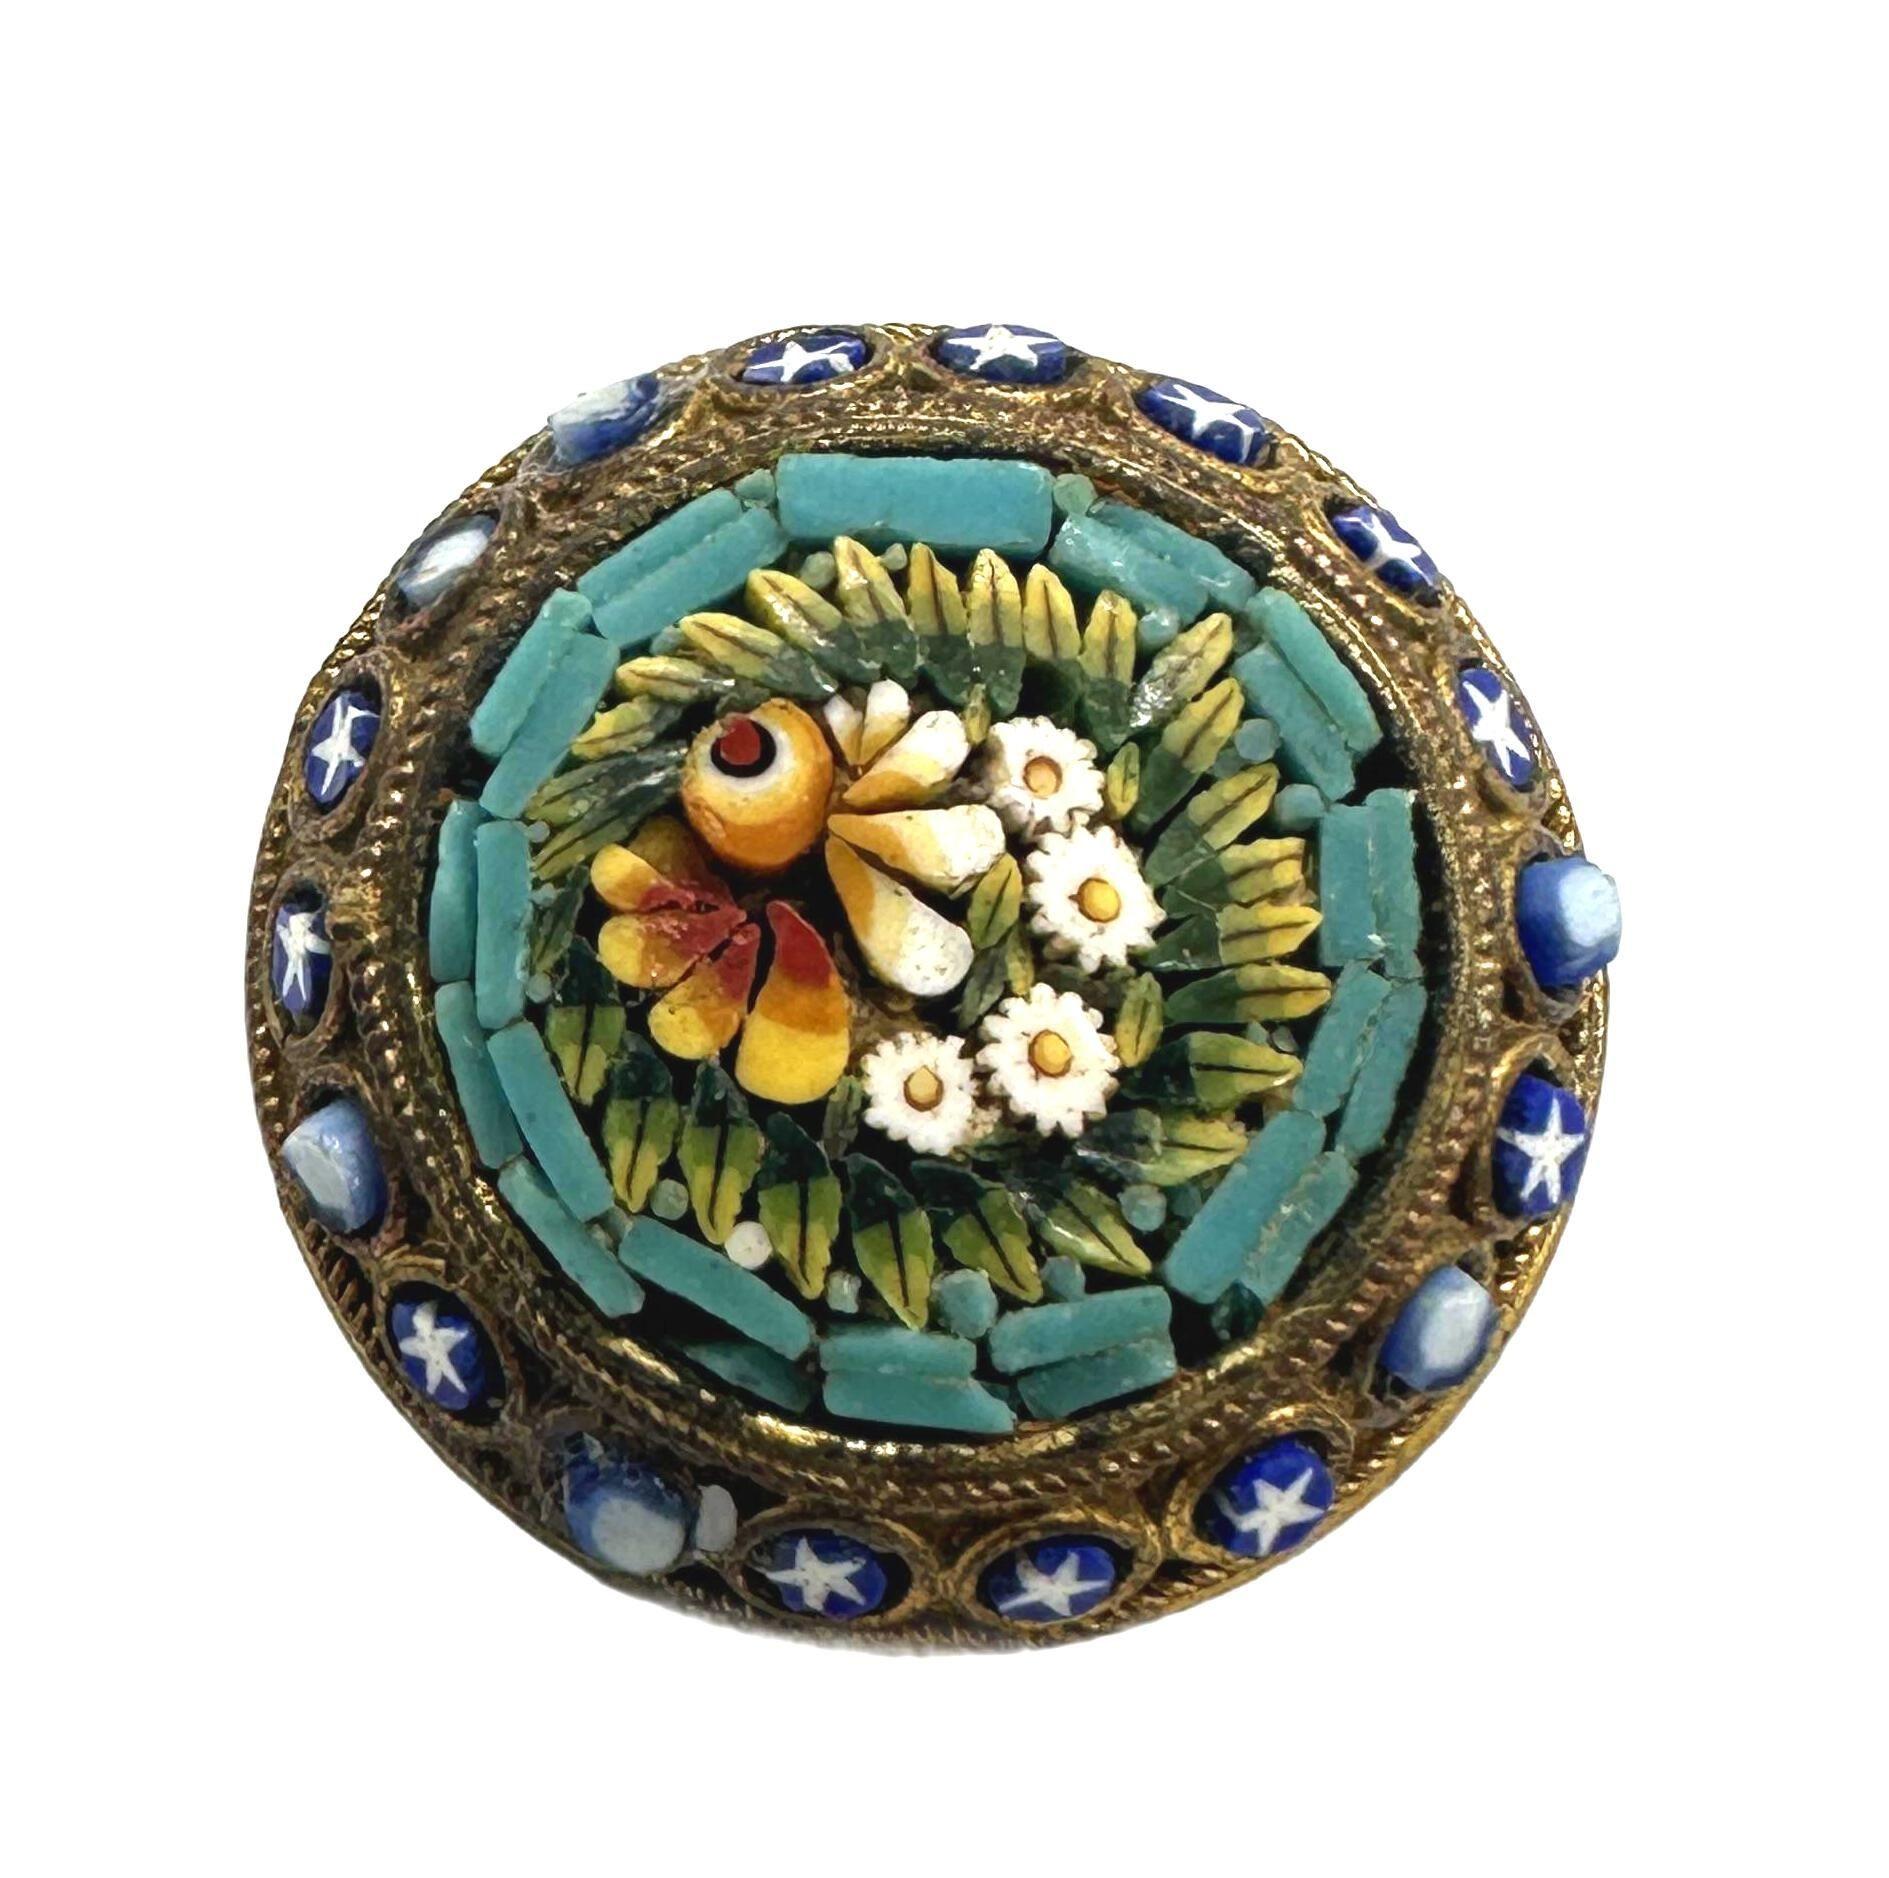 Hübsche italienische Mikro-Mosaik-Brosche mit Blumenmotiv, gefertigt mit Muscheleinlage und in Messing gefasst. Sie misst 1 Zoll im Durchmesser und ist in einem ausgezeichneten Vintage-Zustand, wobei alle Schalen intakt sind. Sie ist auf der